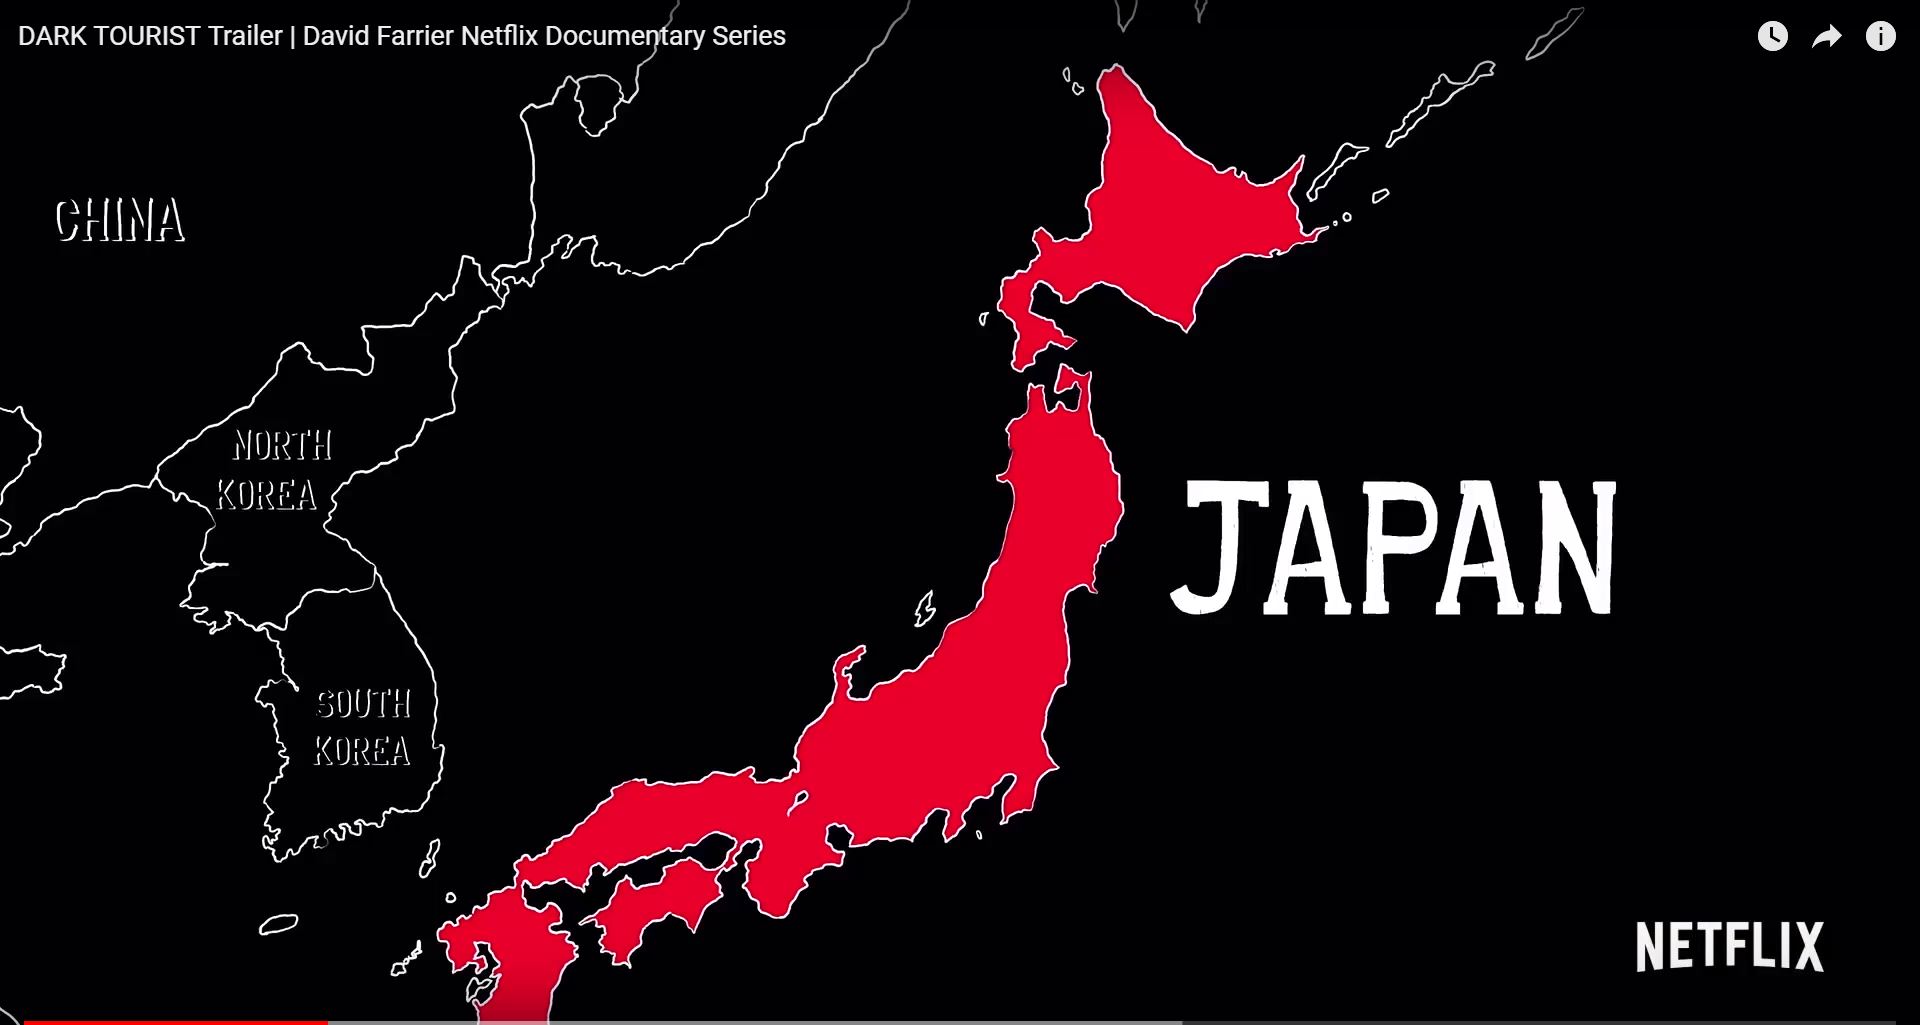 일본 후쿠시마 원전사고 피해를 과장하고 희화화했다는 비난을 받고 있는 미국 넷플릭스의 다큐멘터리 프로그램 ‘다크 투어리스트’의 방송 영상. <유튜브 화면 캡처>